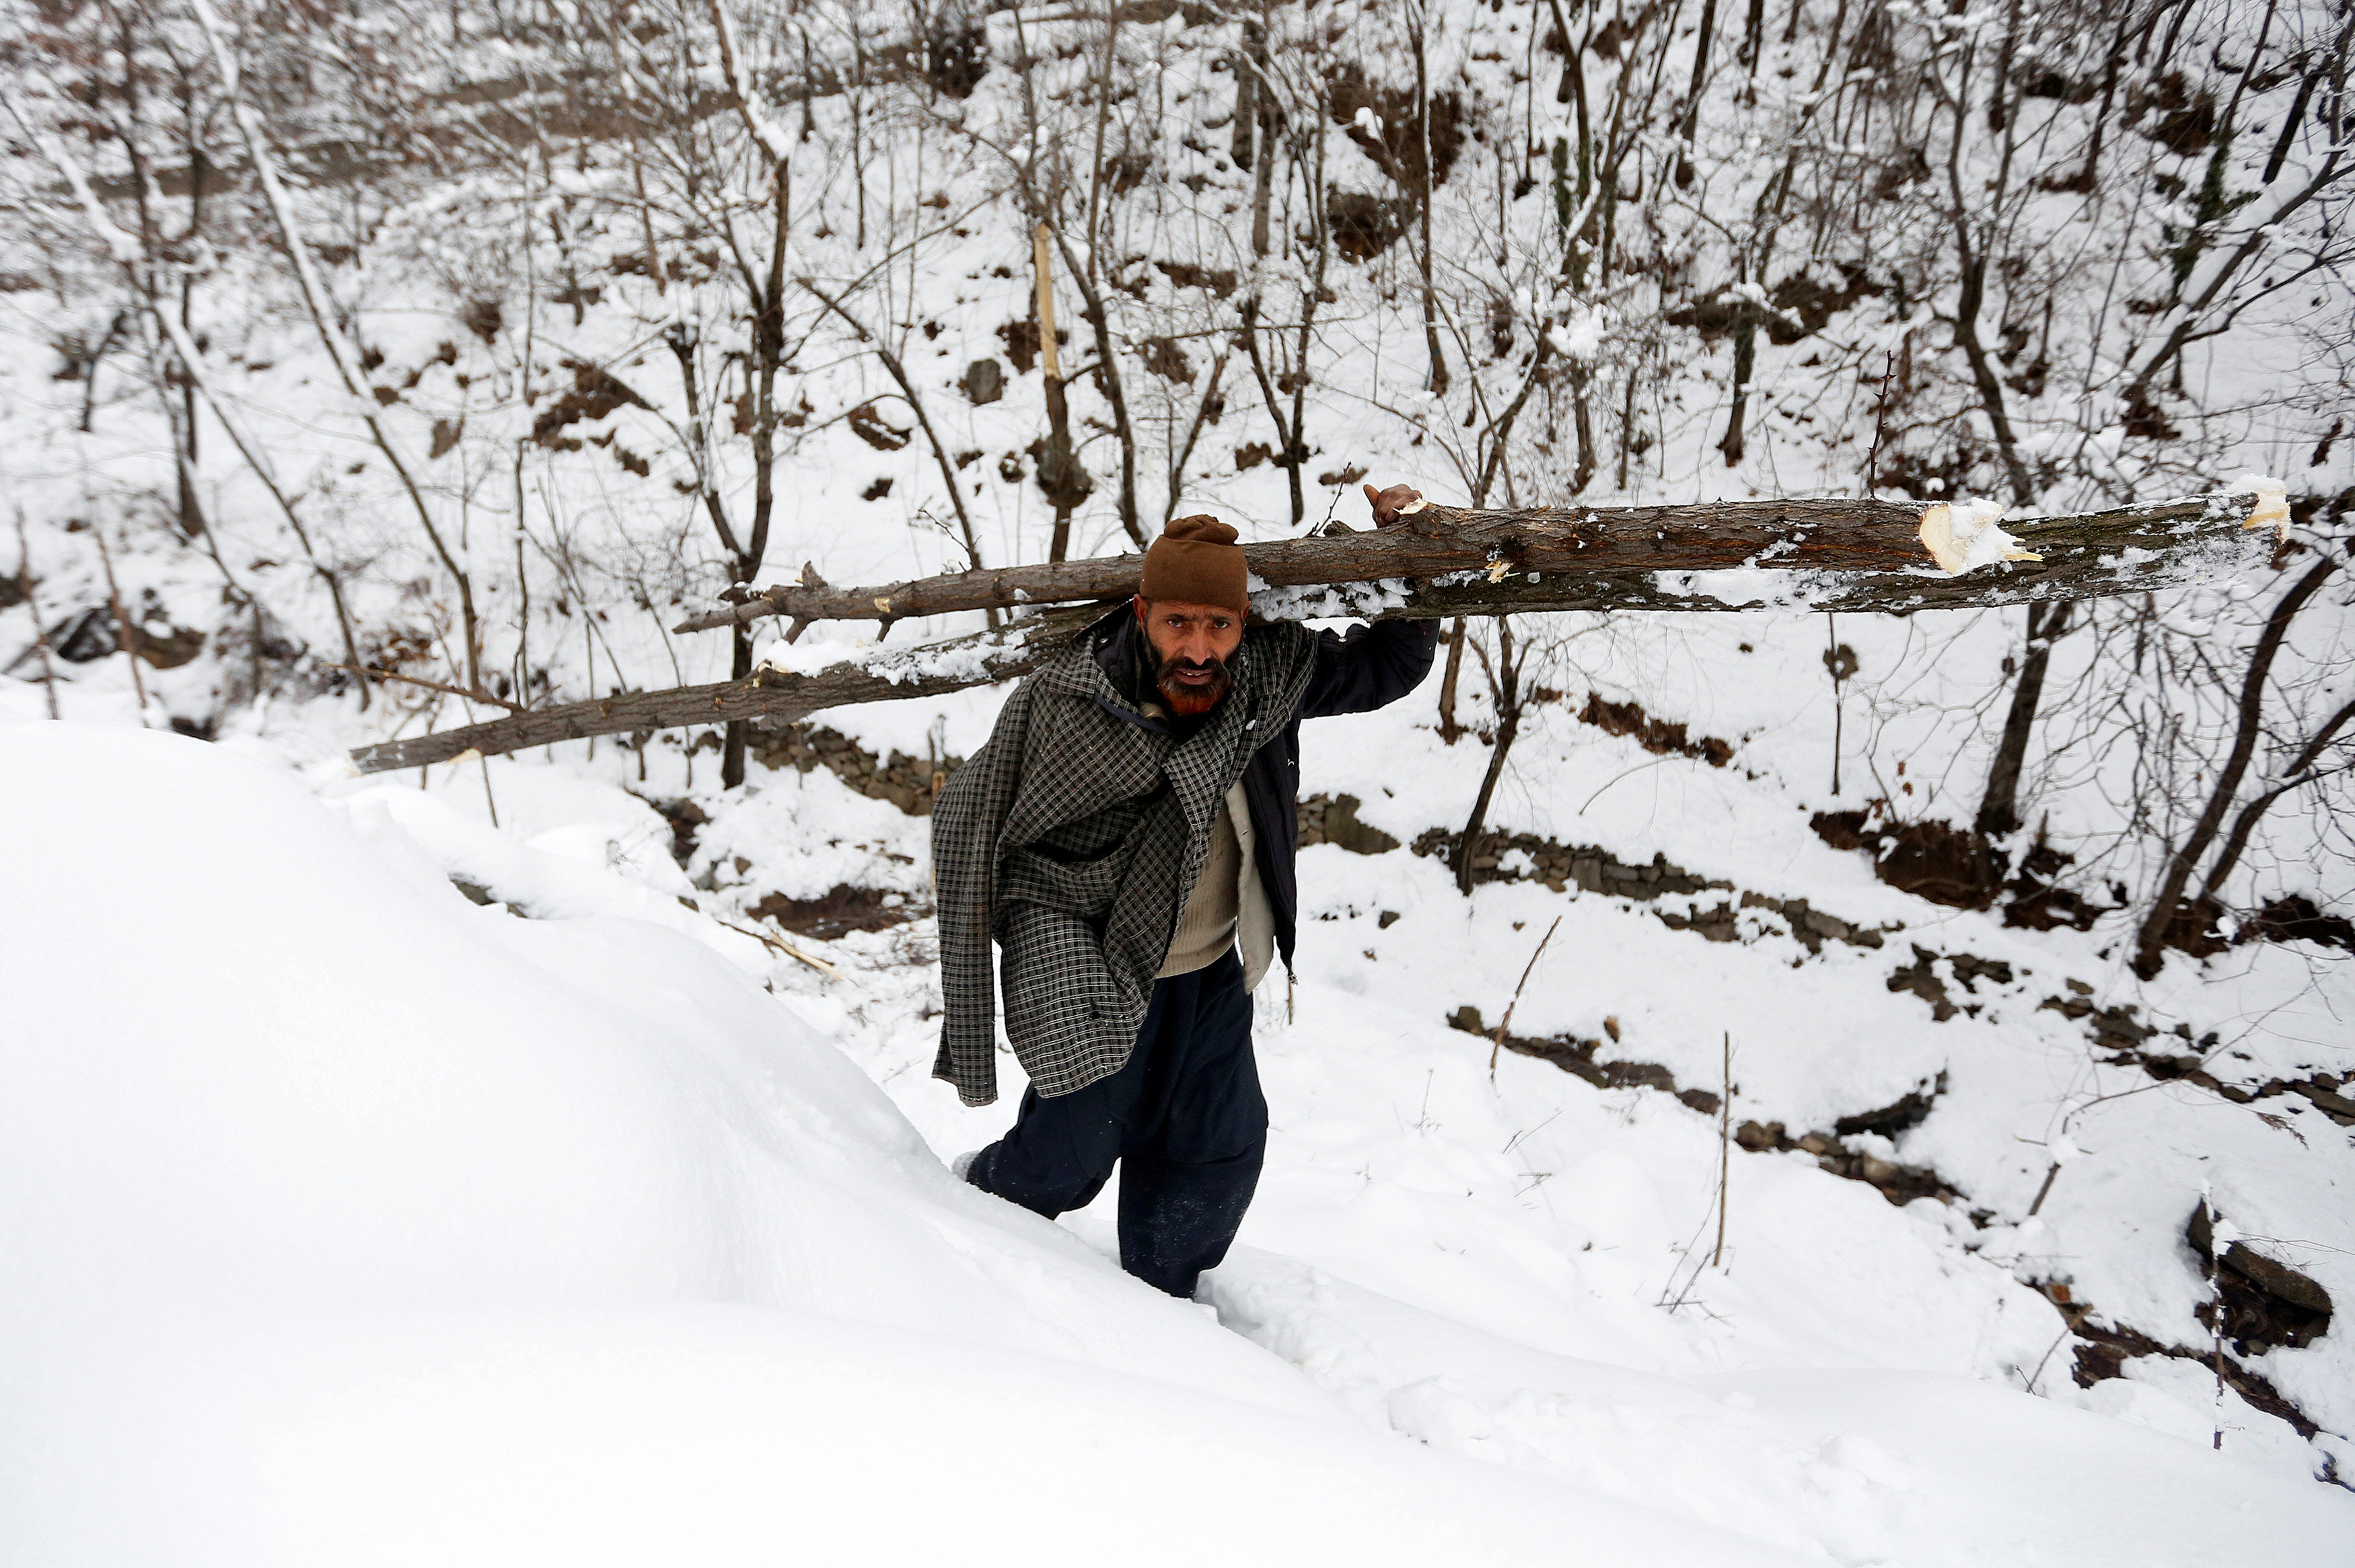 رجل يحمل جذوع أشجار على مرتفعات مغطاه بالثلج فى الهند